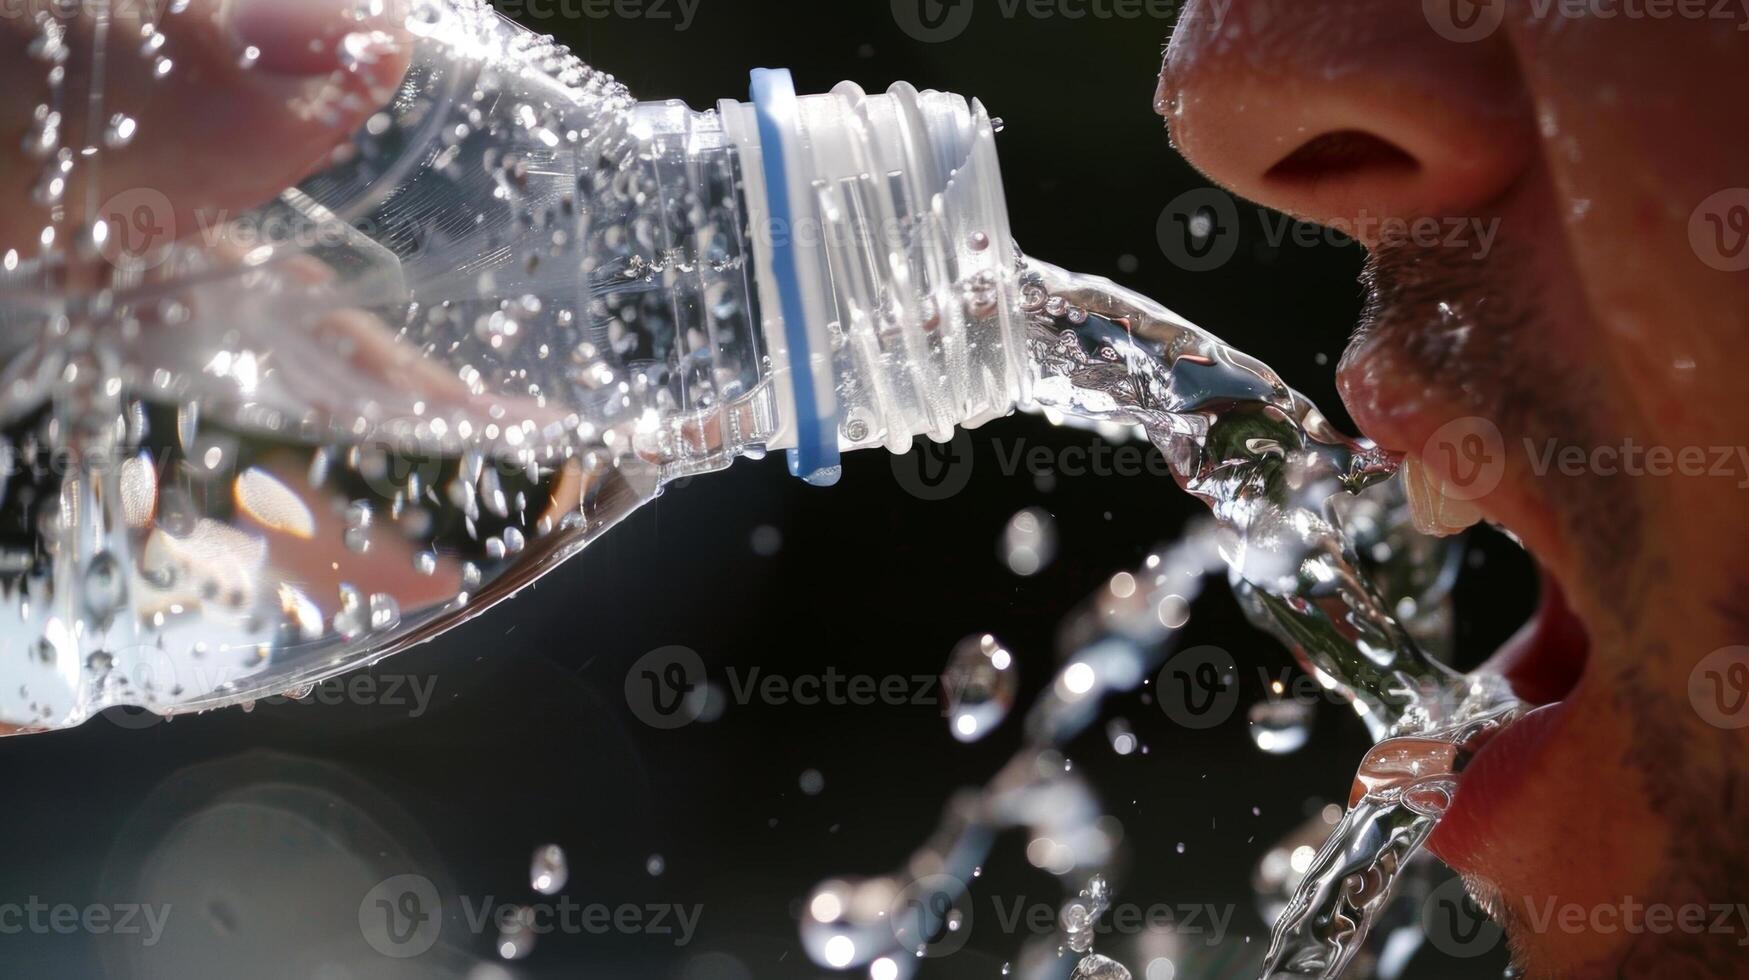 un persona toma un sorbo de frío como hielo agua desde su agua botella el contraste Entre caliente y frío estimulante su Sentidos y promoviendo un estado de balance. foto